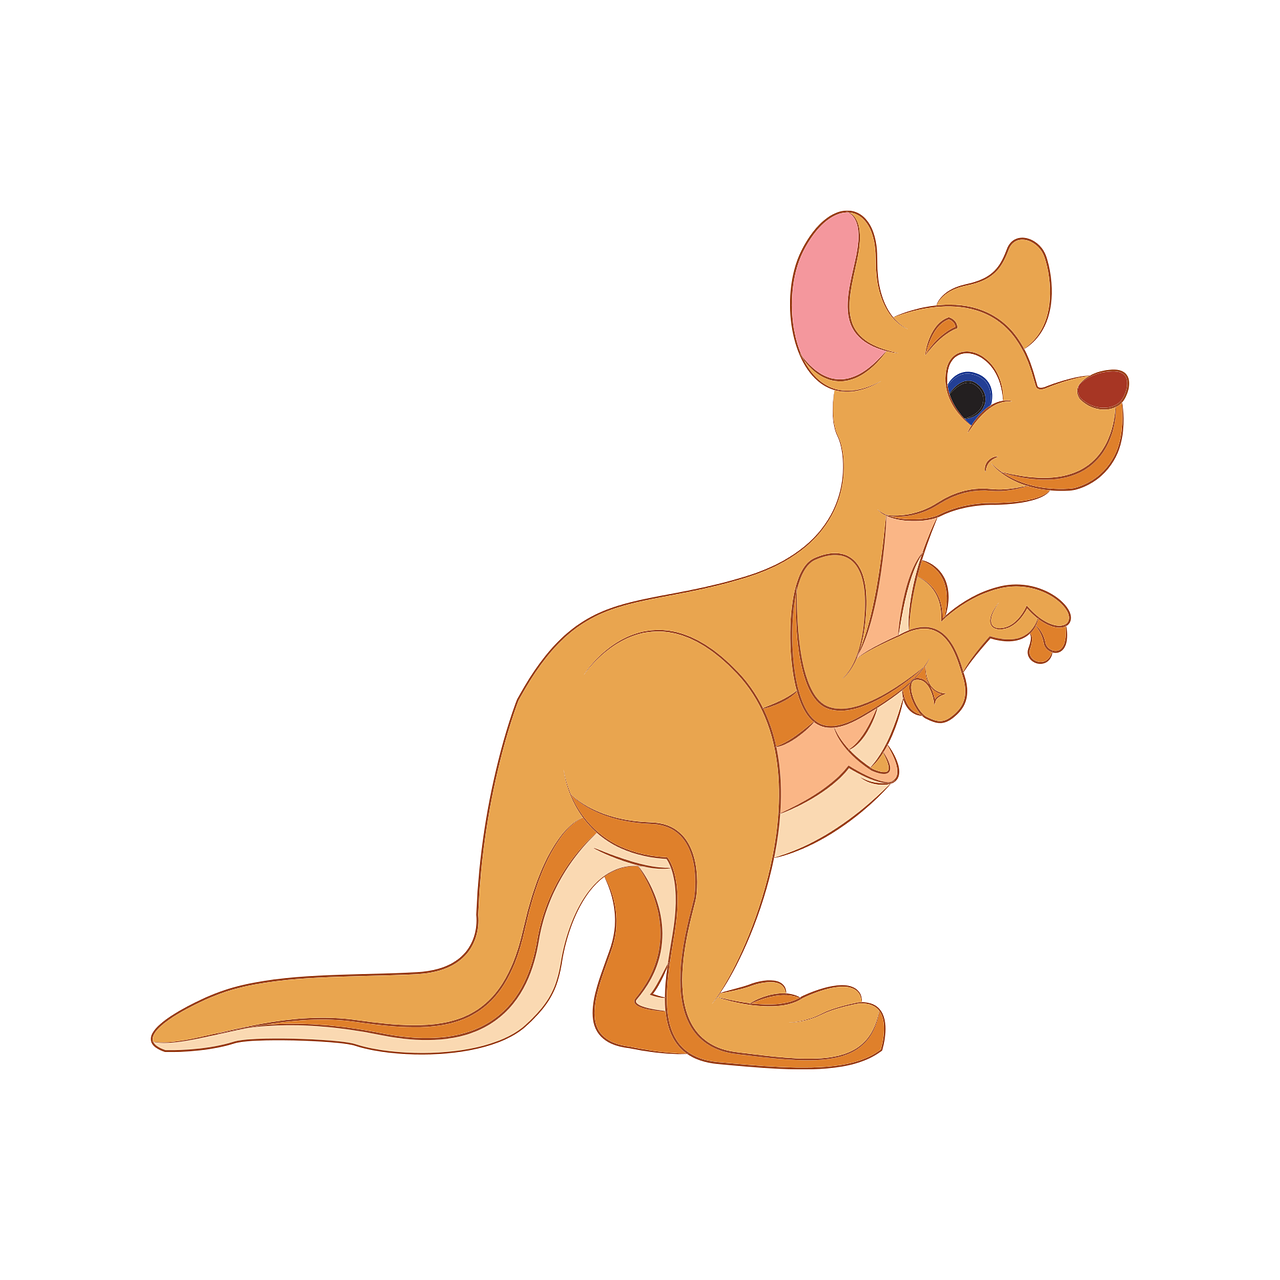 kangaroo-gee9023e07_1280 (c) www.pixabay.com